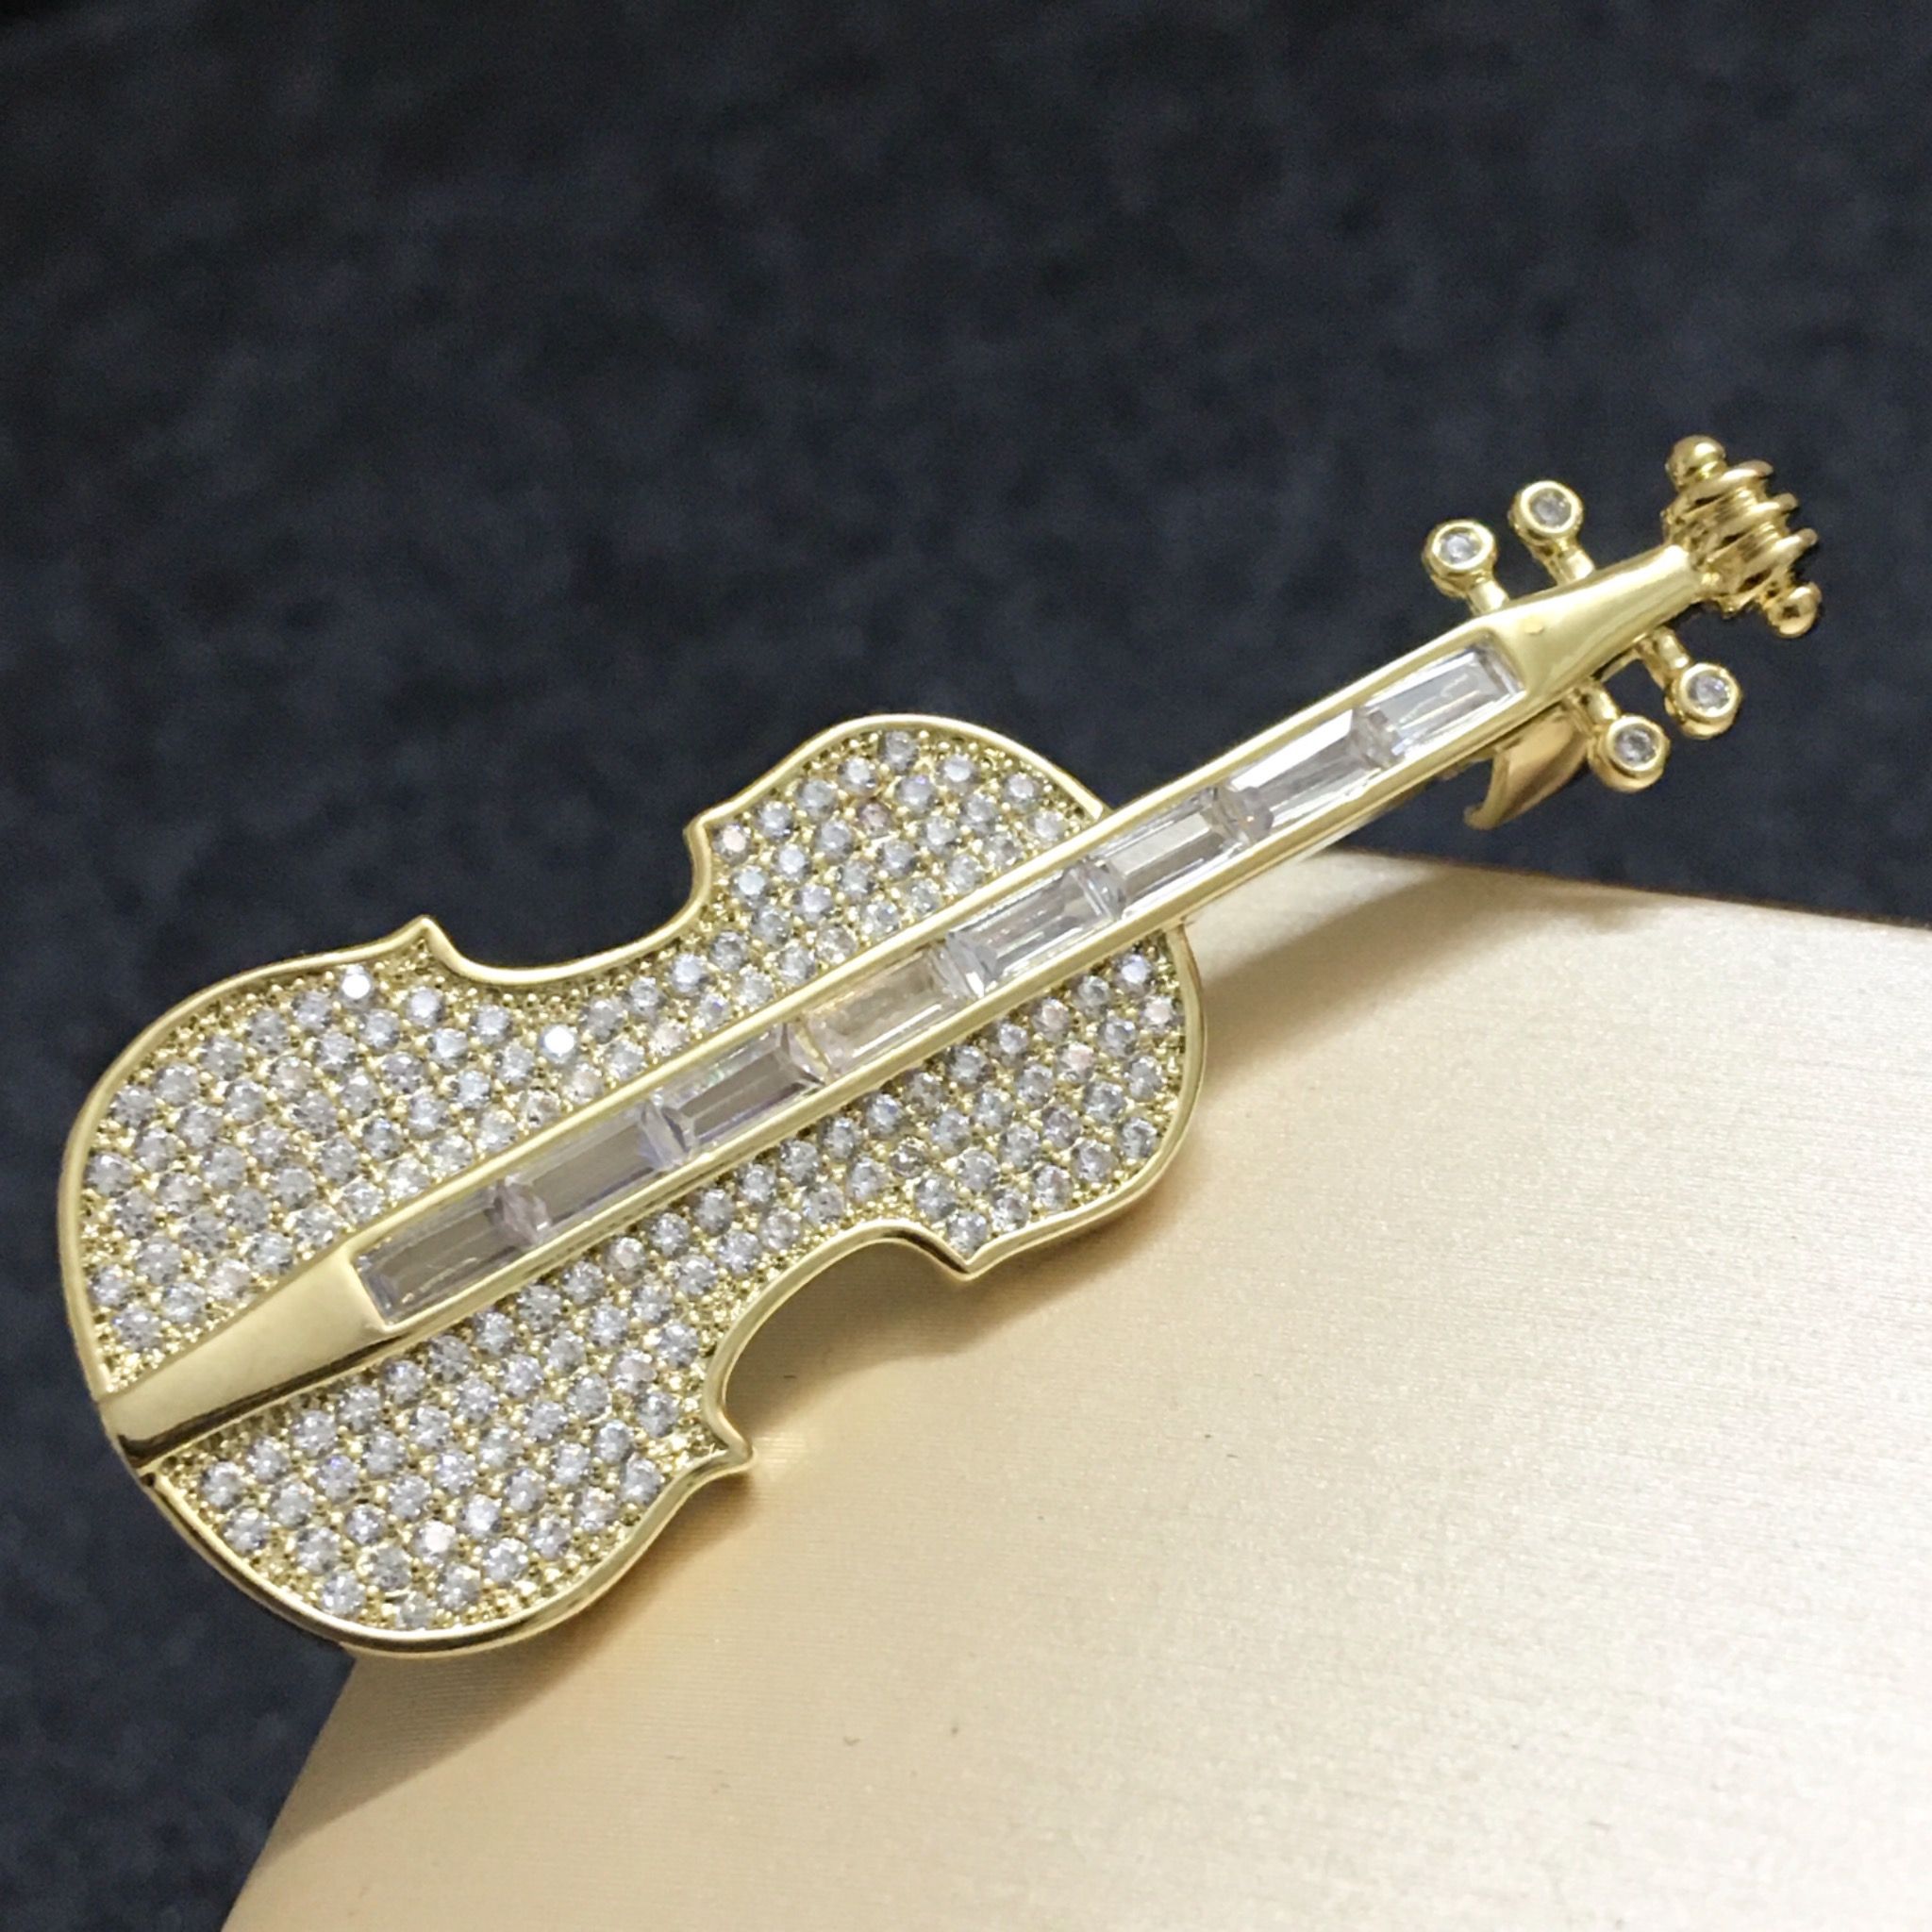  Cài Áo Nam, Nữ - Cây Đàn Violin Pha Lê Sang Trọng 